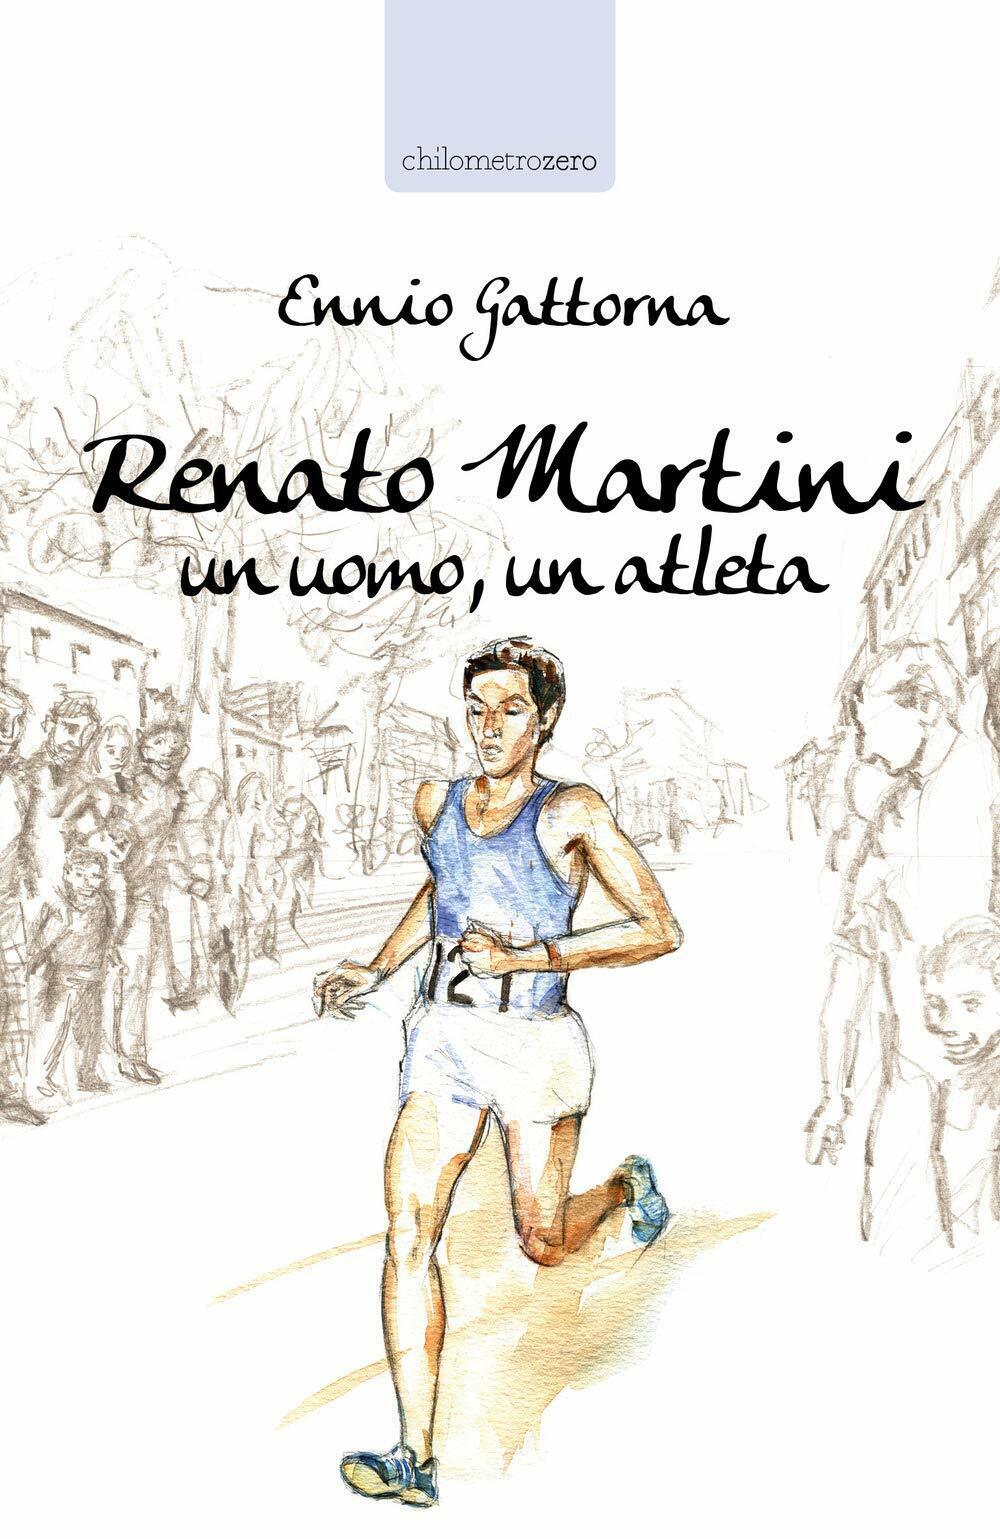 Renato Martini: Un uomo, un atleta - Ennio Gattorna - La torretta, 2019